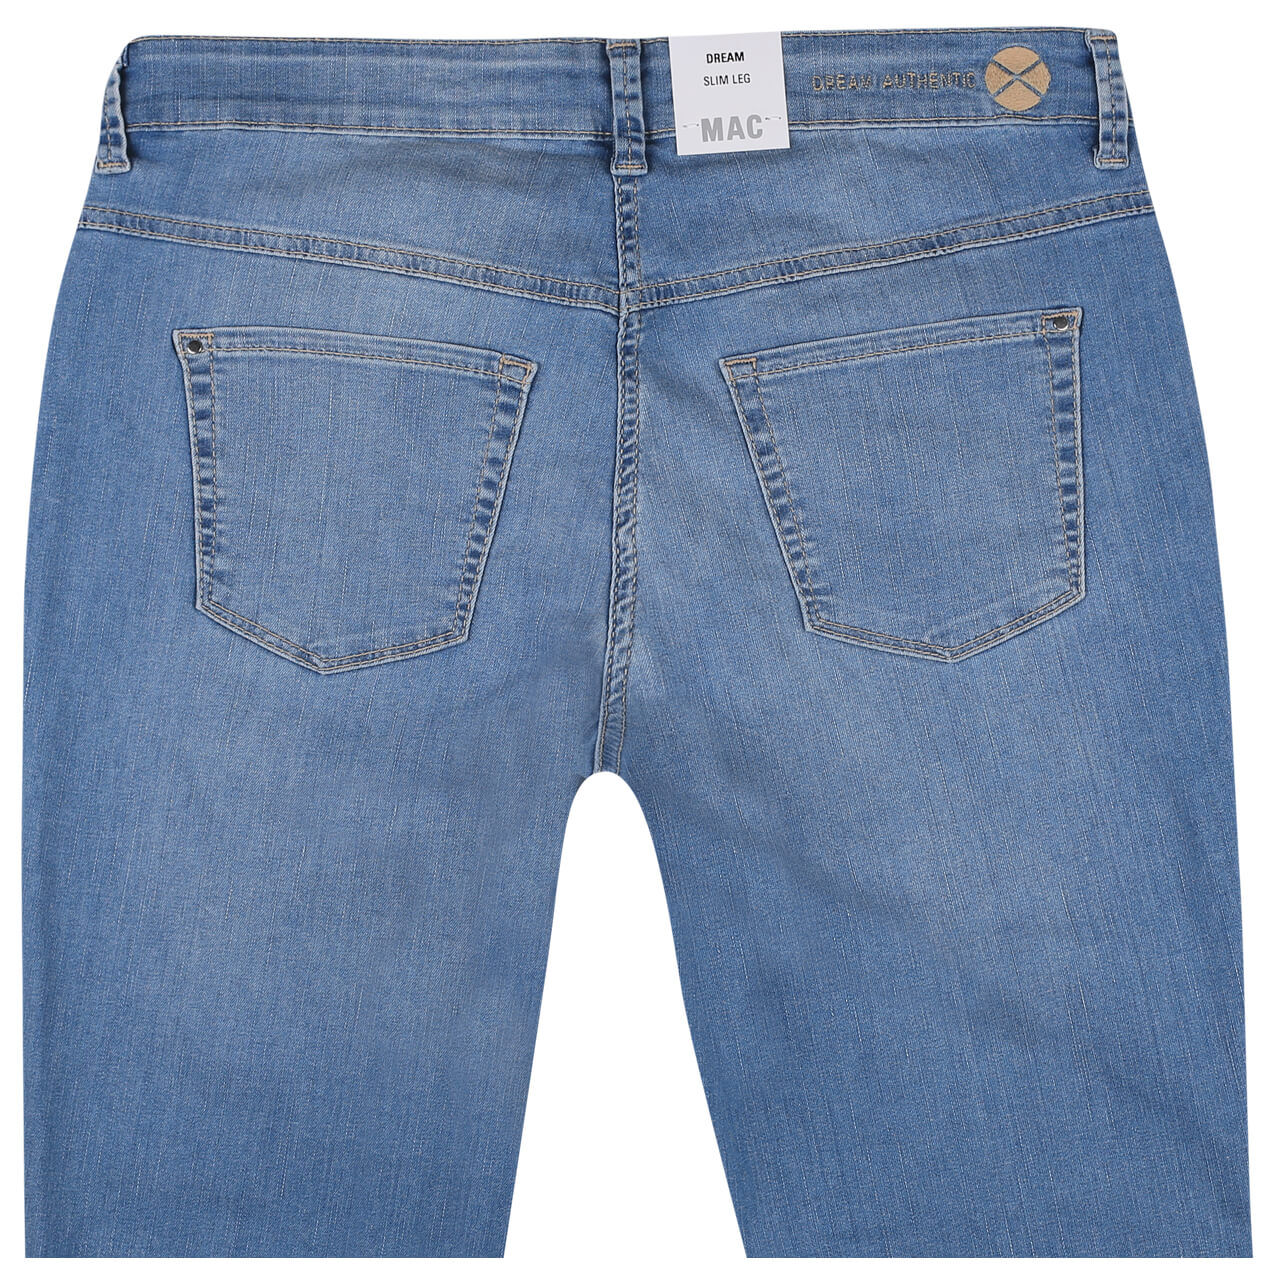 MAC Jeans Dream Chic für Damen in Hellblau angewaschen, FarbNr.: D288